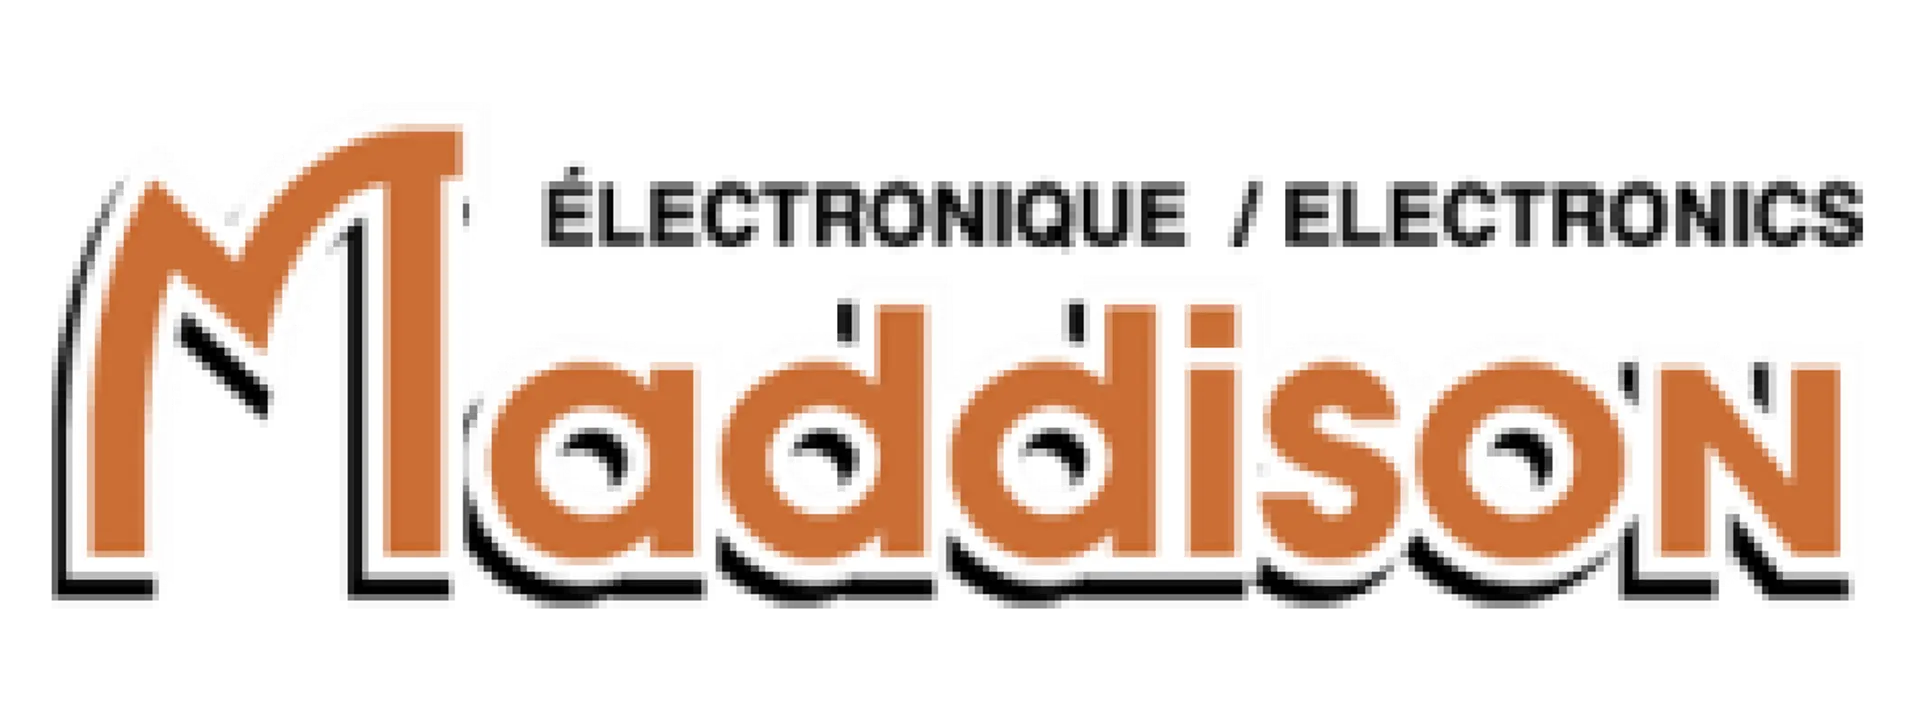 MADDISON ELECTRONIQUE logo de circulaire